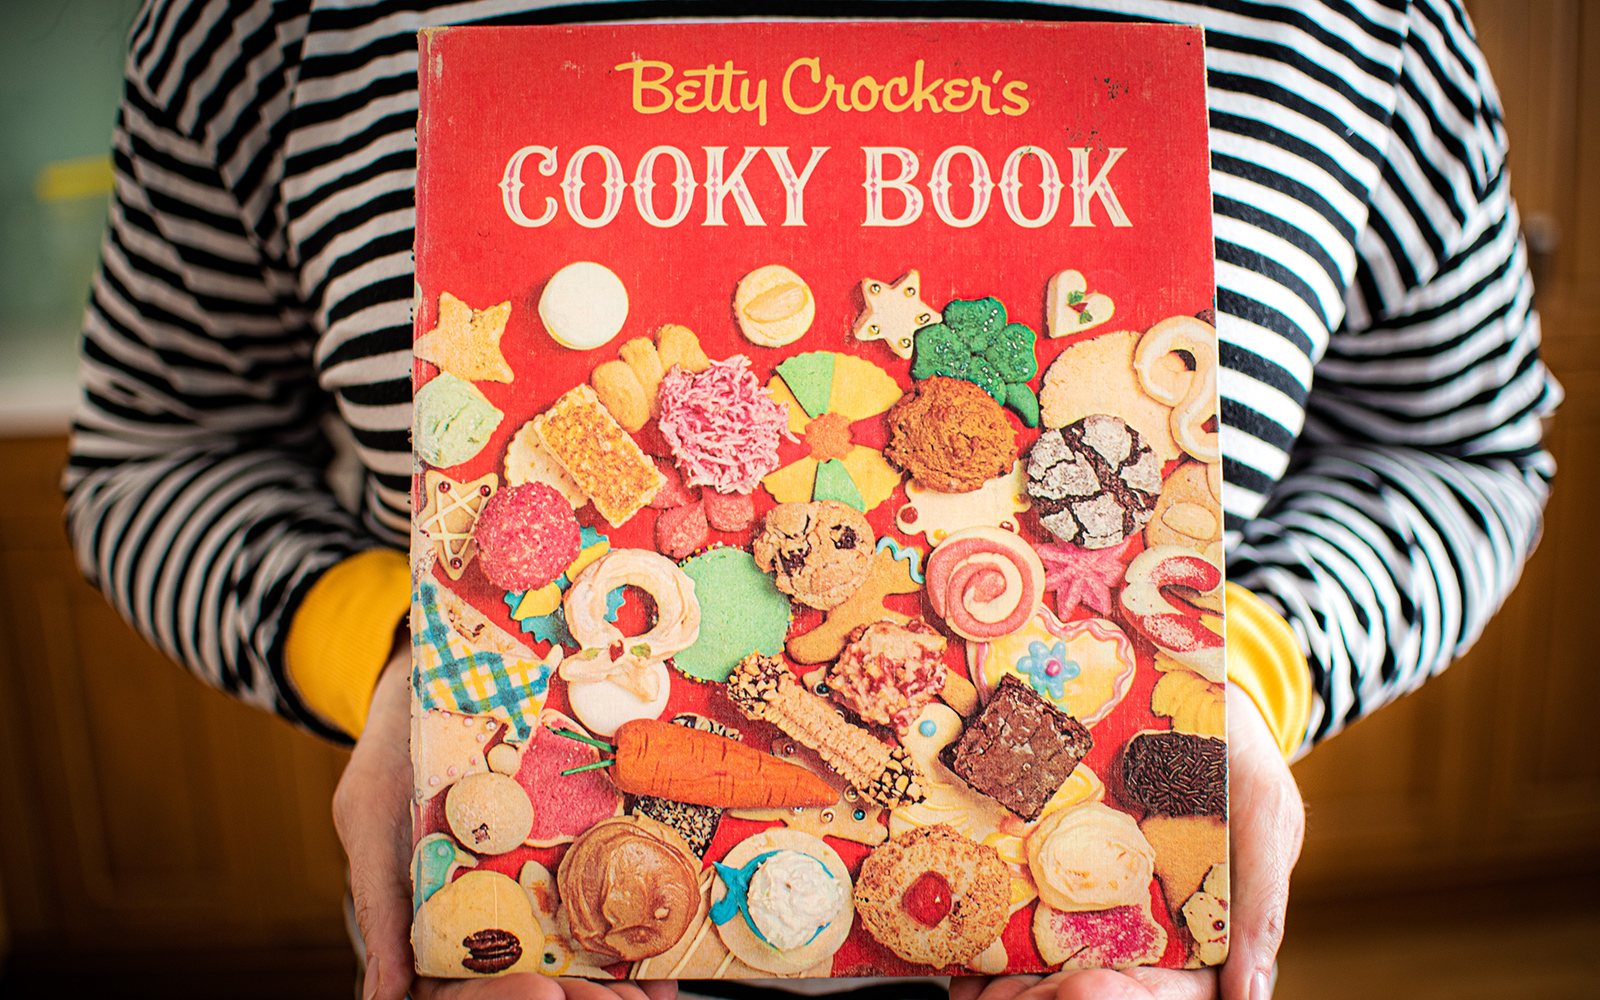 Betty Crocker's Cooky Book & New Books — 02 December 2022